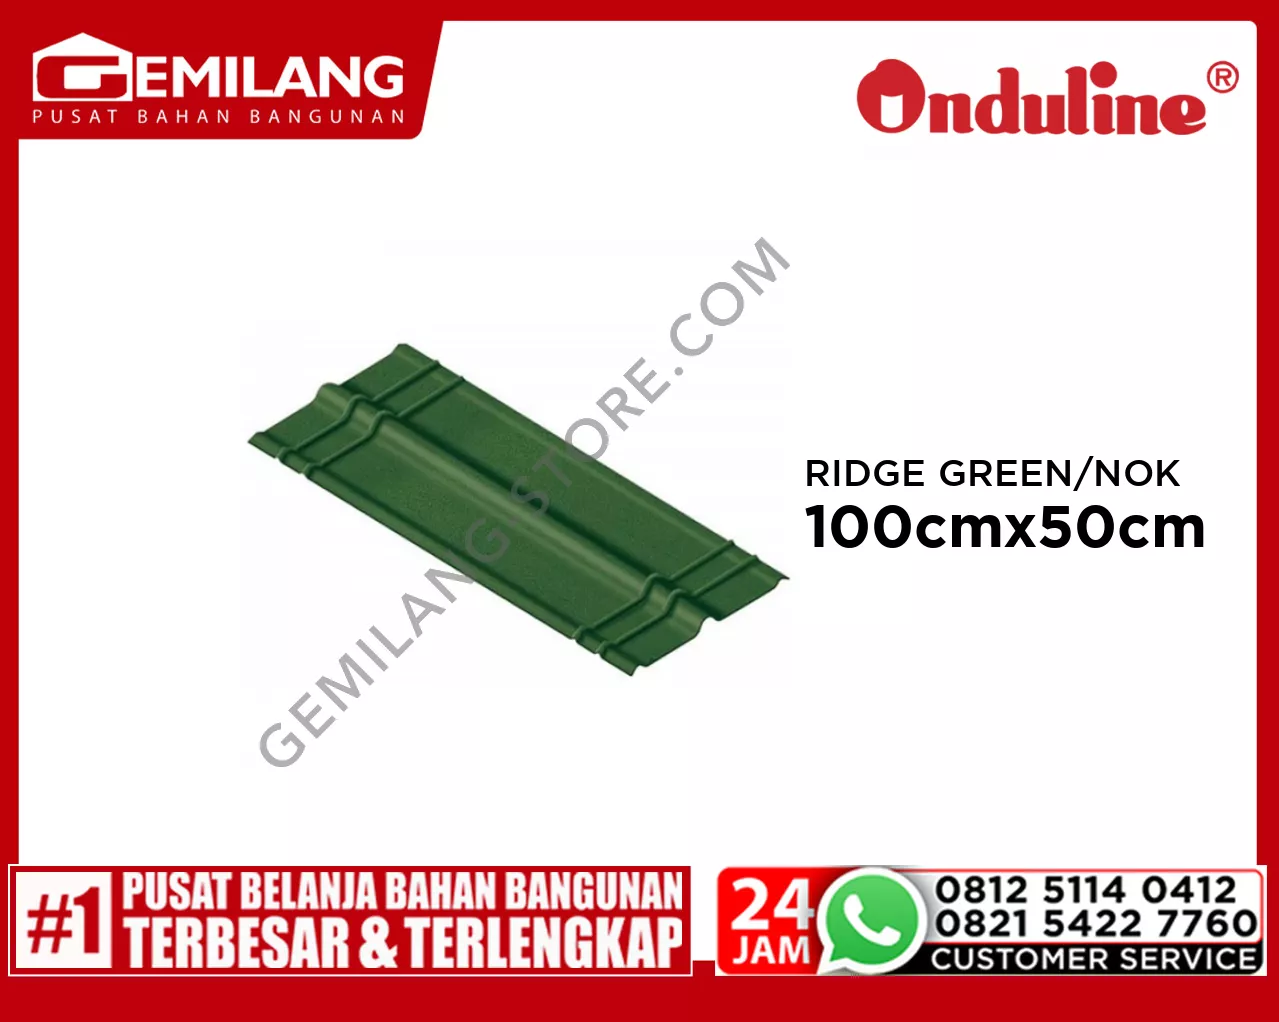 ONDULINE RIDGE GREEN/NOK 100cmx50cm